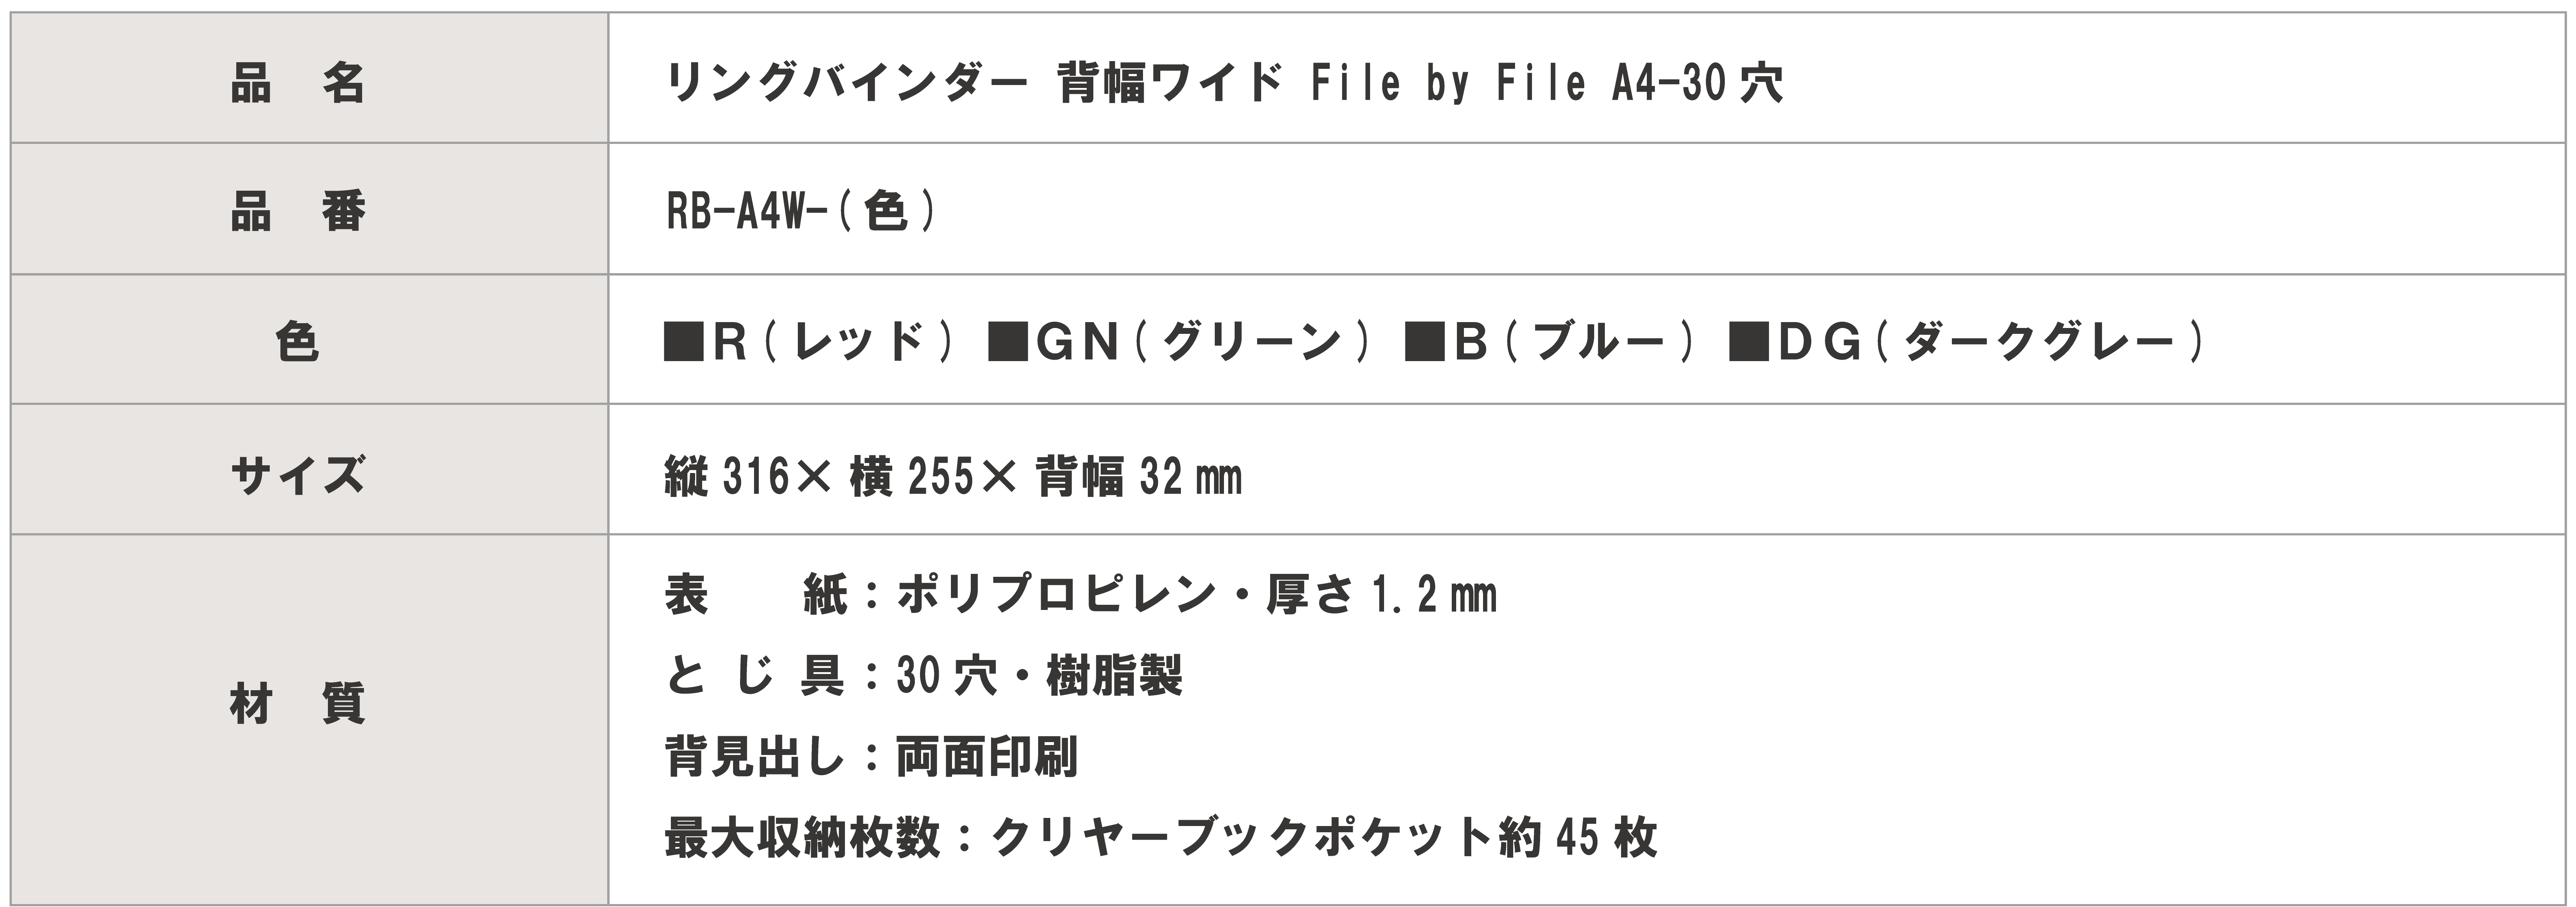 リングバインダー 背幅ワイド File by File A4-30穴